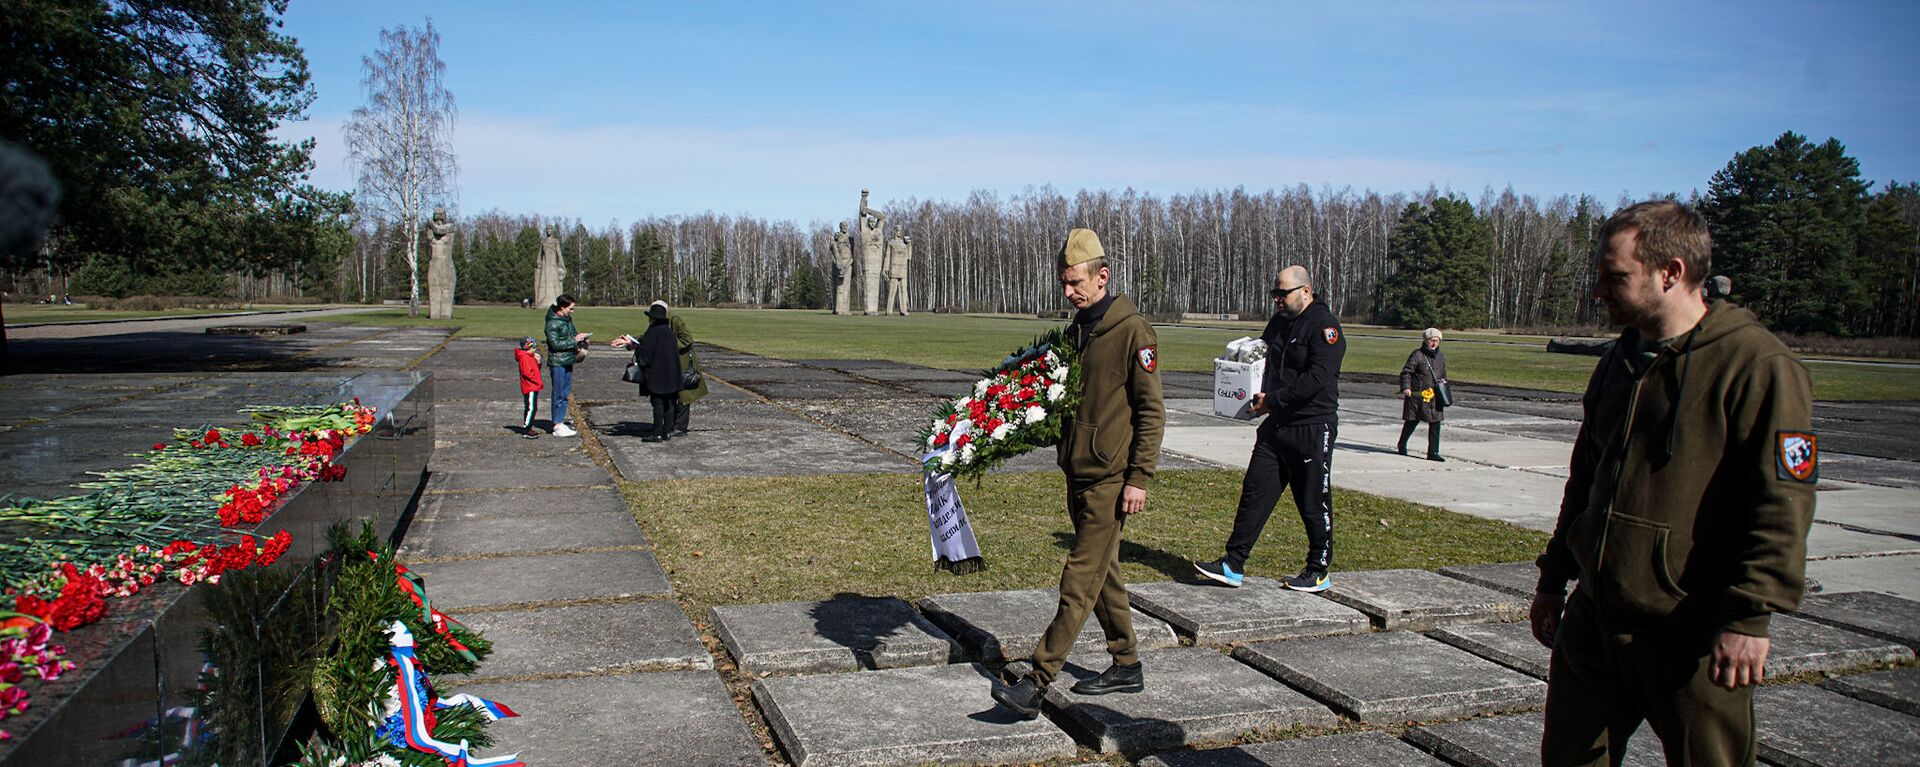 Международный день освобождения узников нацистских концлагерей: возложение цветов у Саласпилсского мемориала - Sputnik Латвия, 1920, 11.04.2021